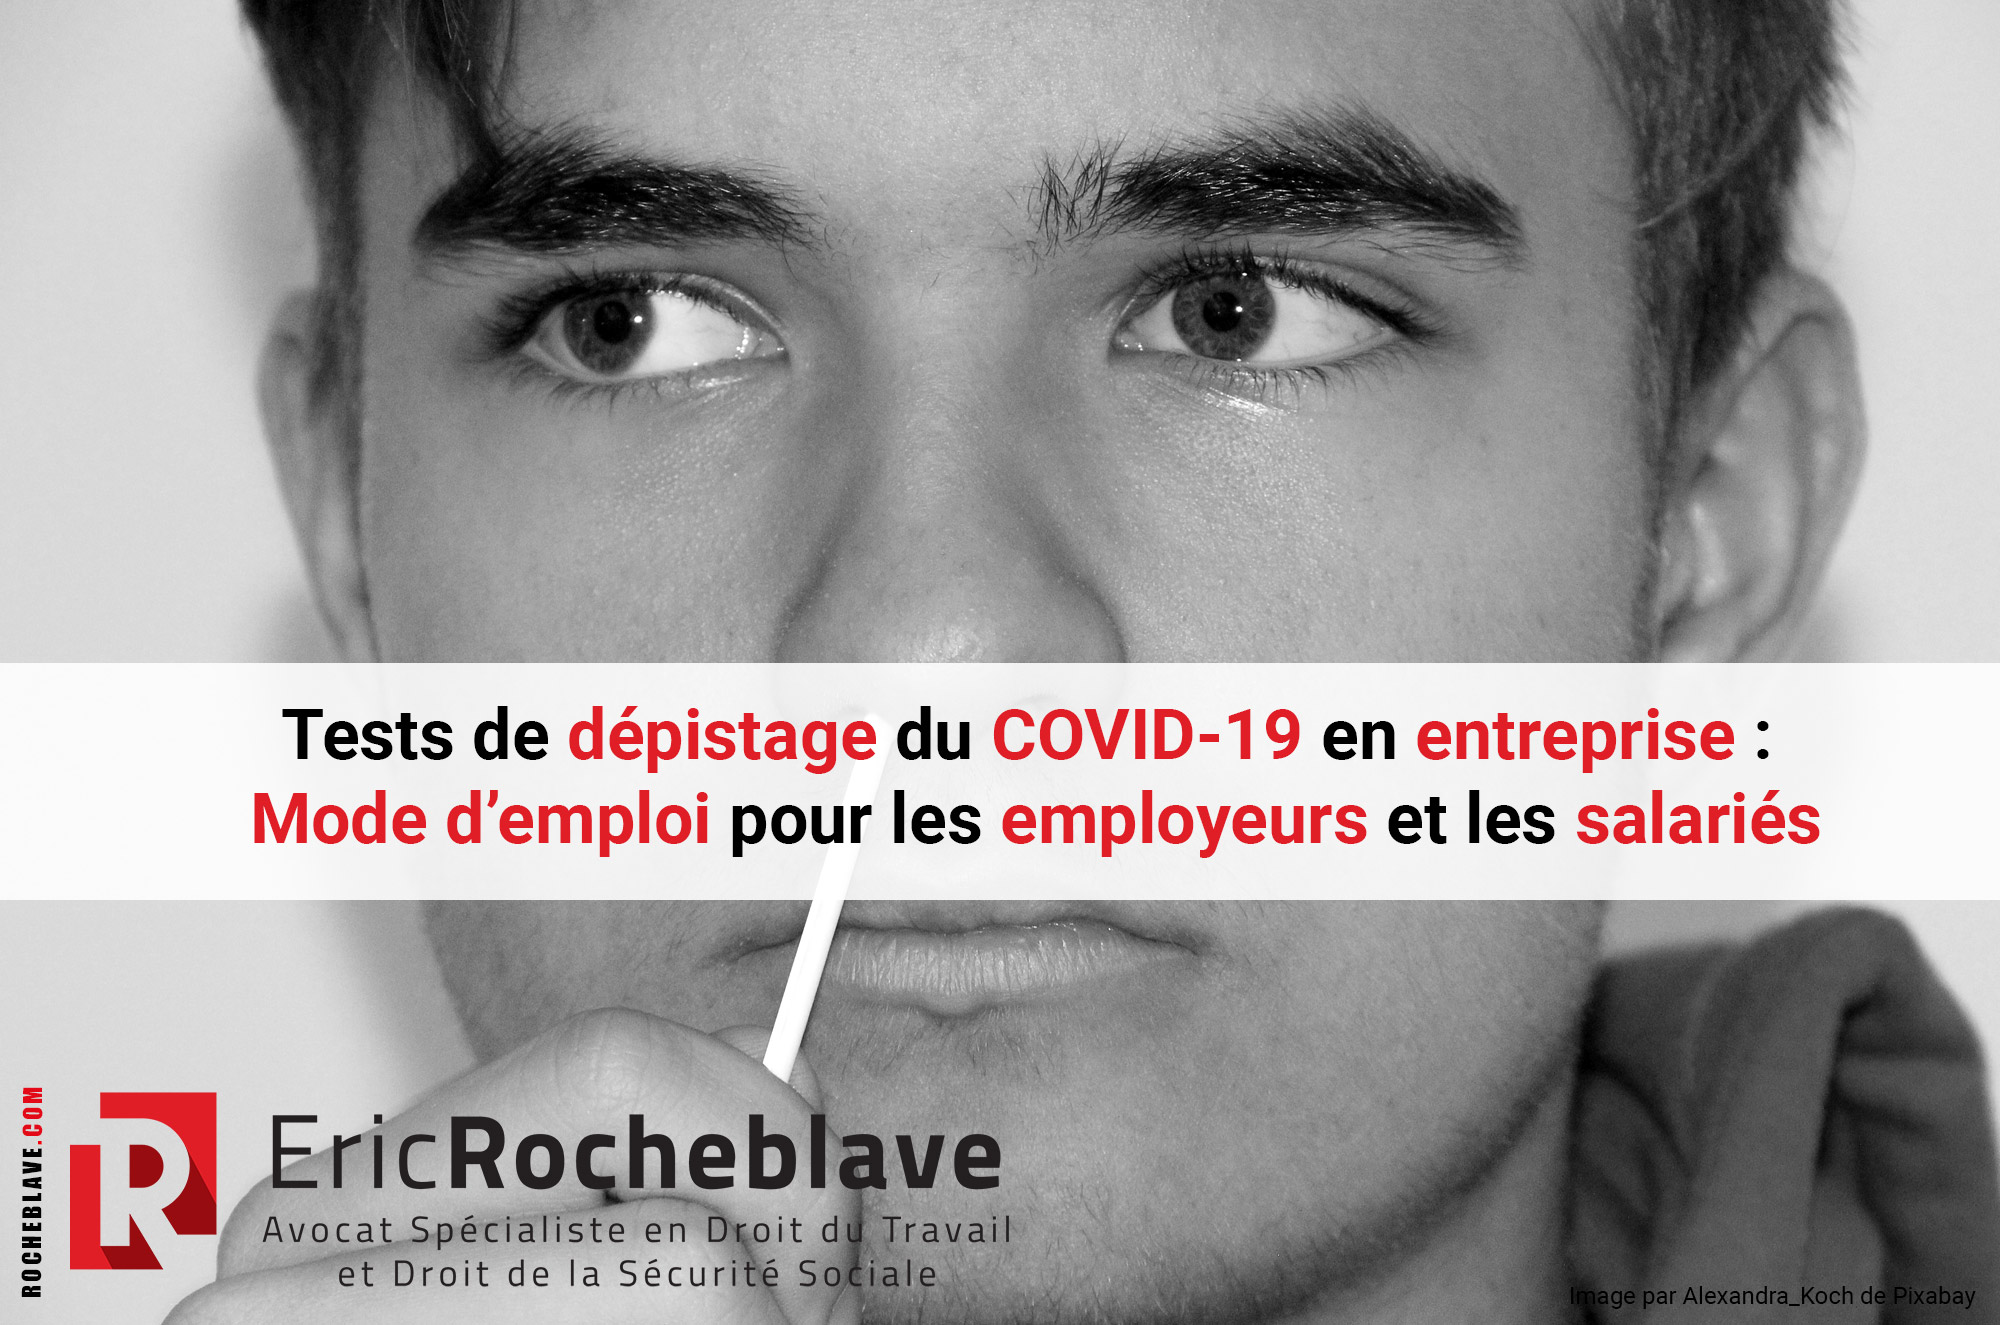 Tests de dépistage du COVID-19 en entreprise : Mode d’emploi pour les employeurs et les salariés